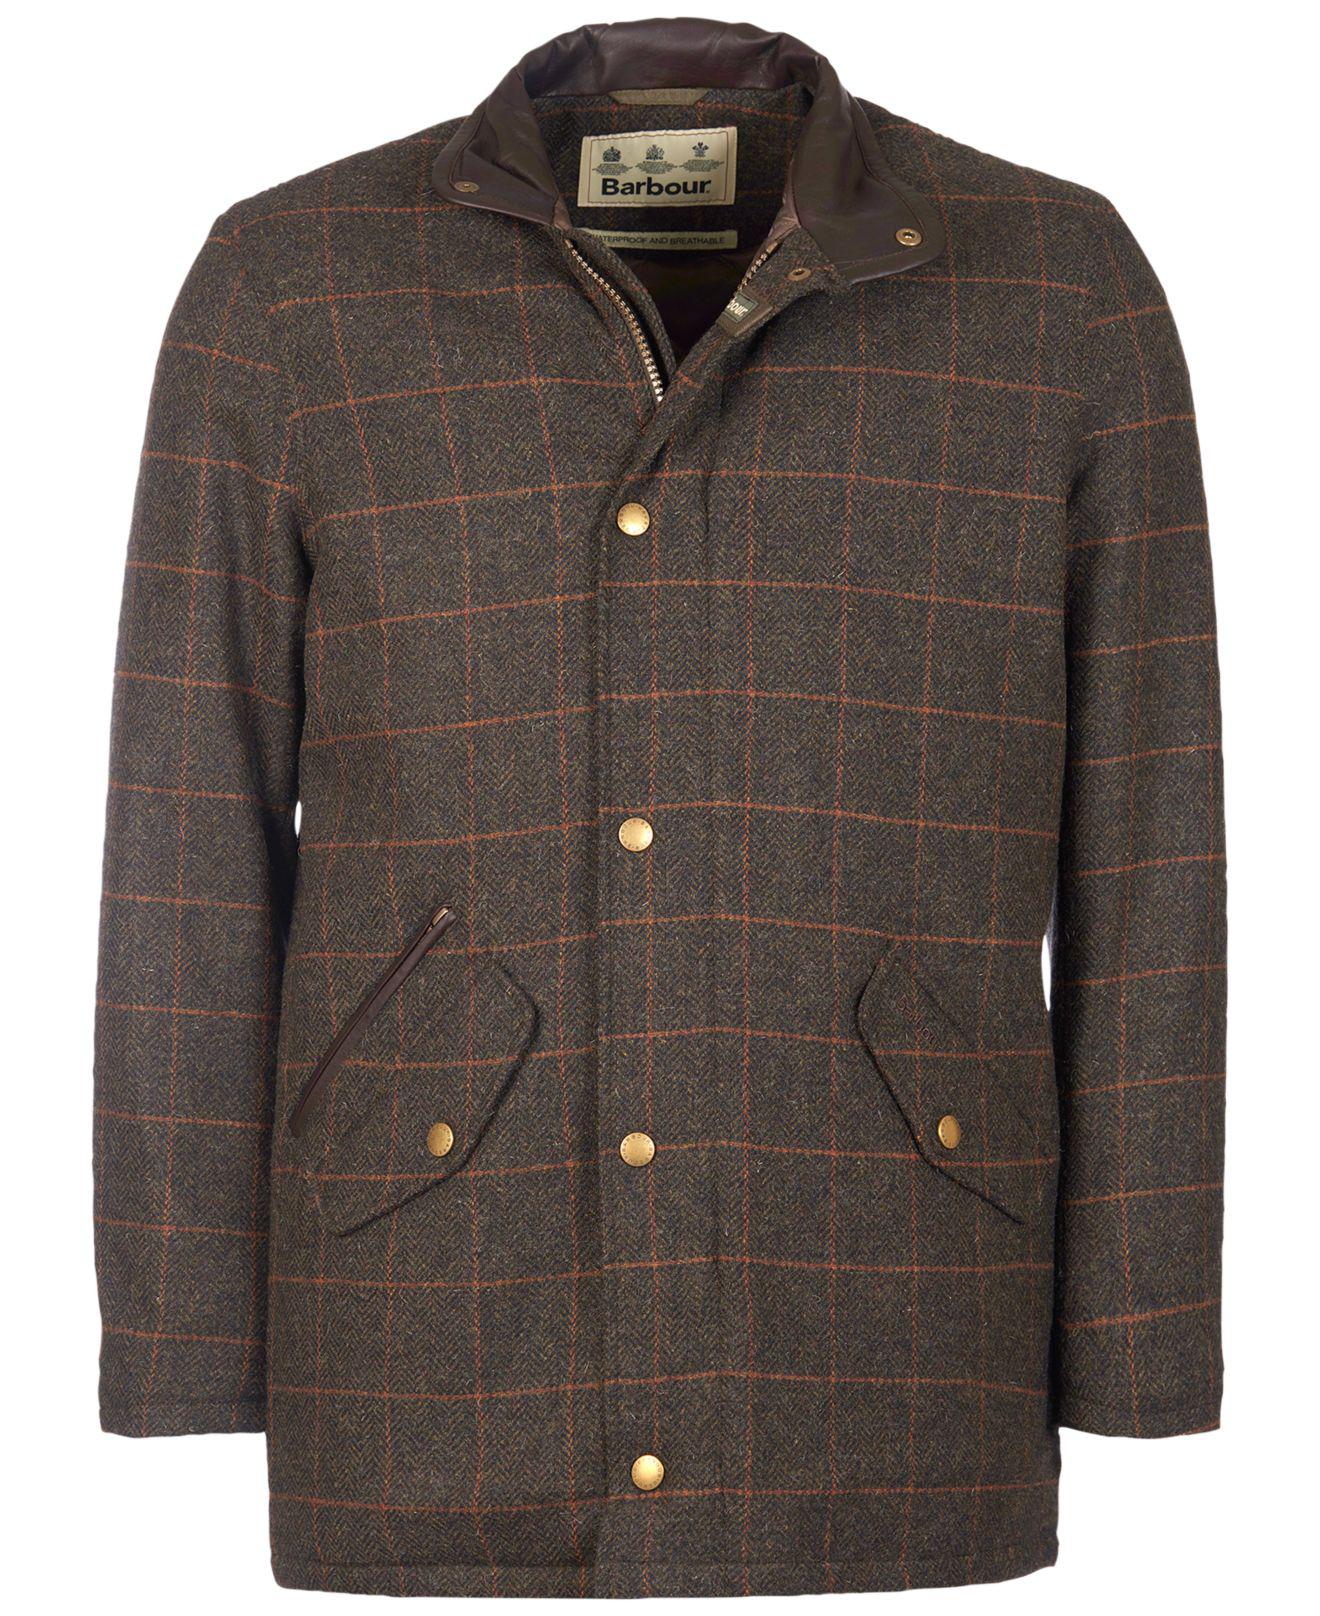 Barbour Men's Tweed Prestbury Jacket in Green for Men - Lyst